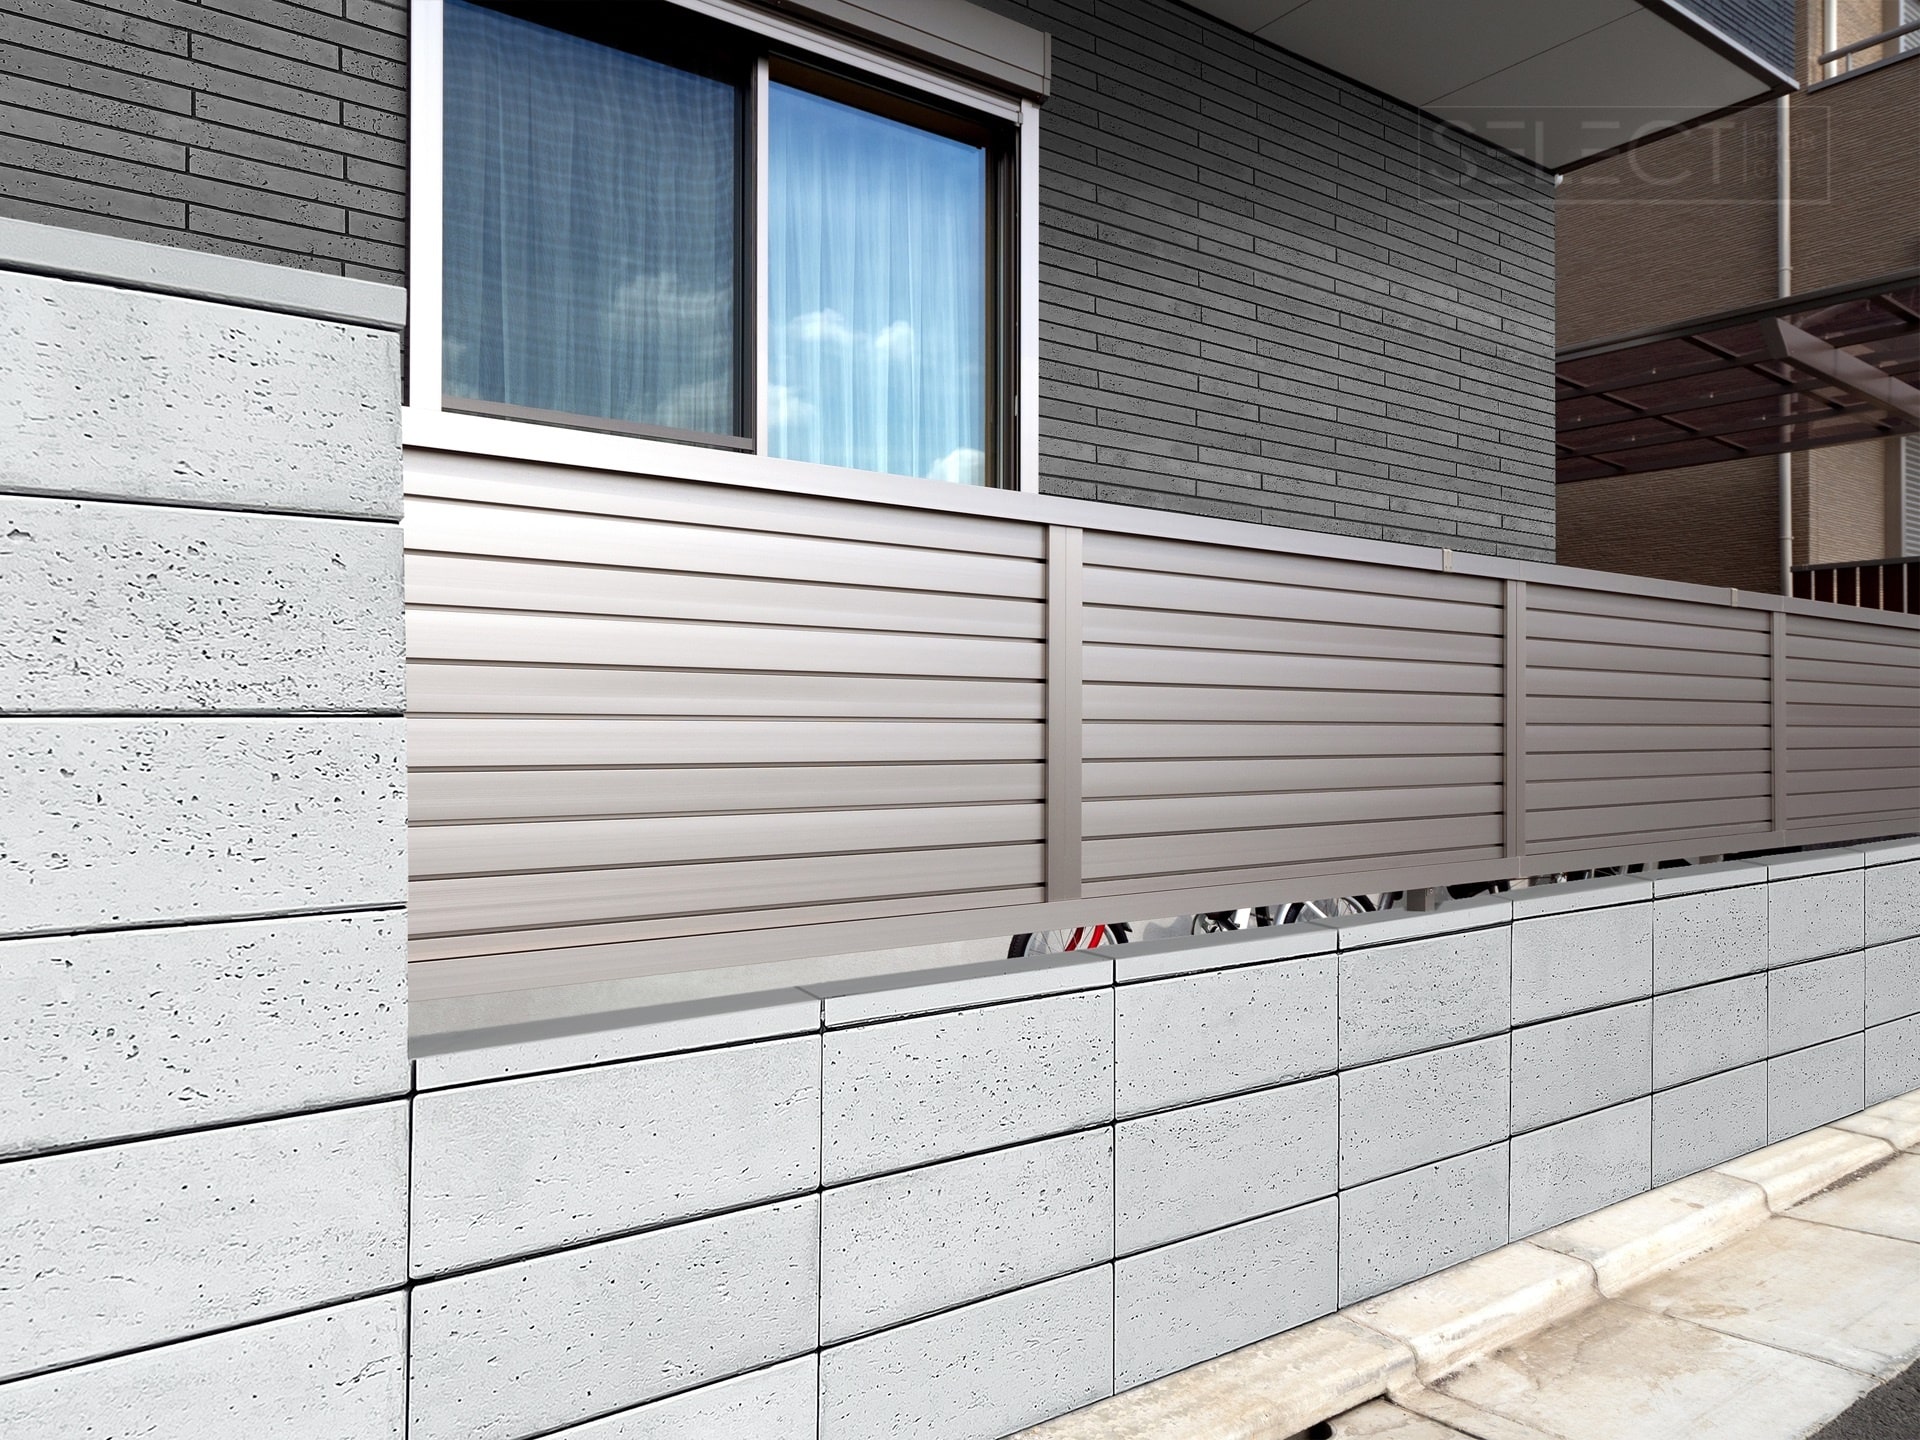 Архітектурний бетон для будівництва паркану - блоки декоративні для огорожі в сучасному стилі - купити завод СЕЛЕКТ